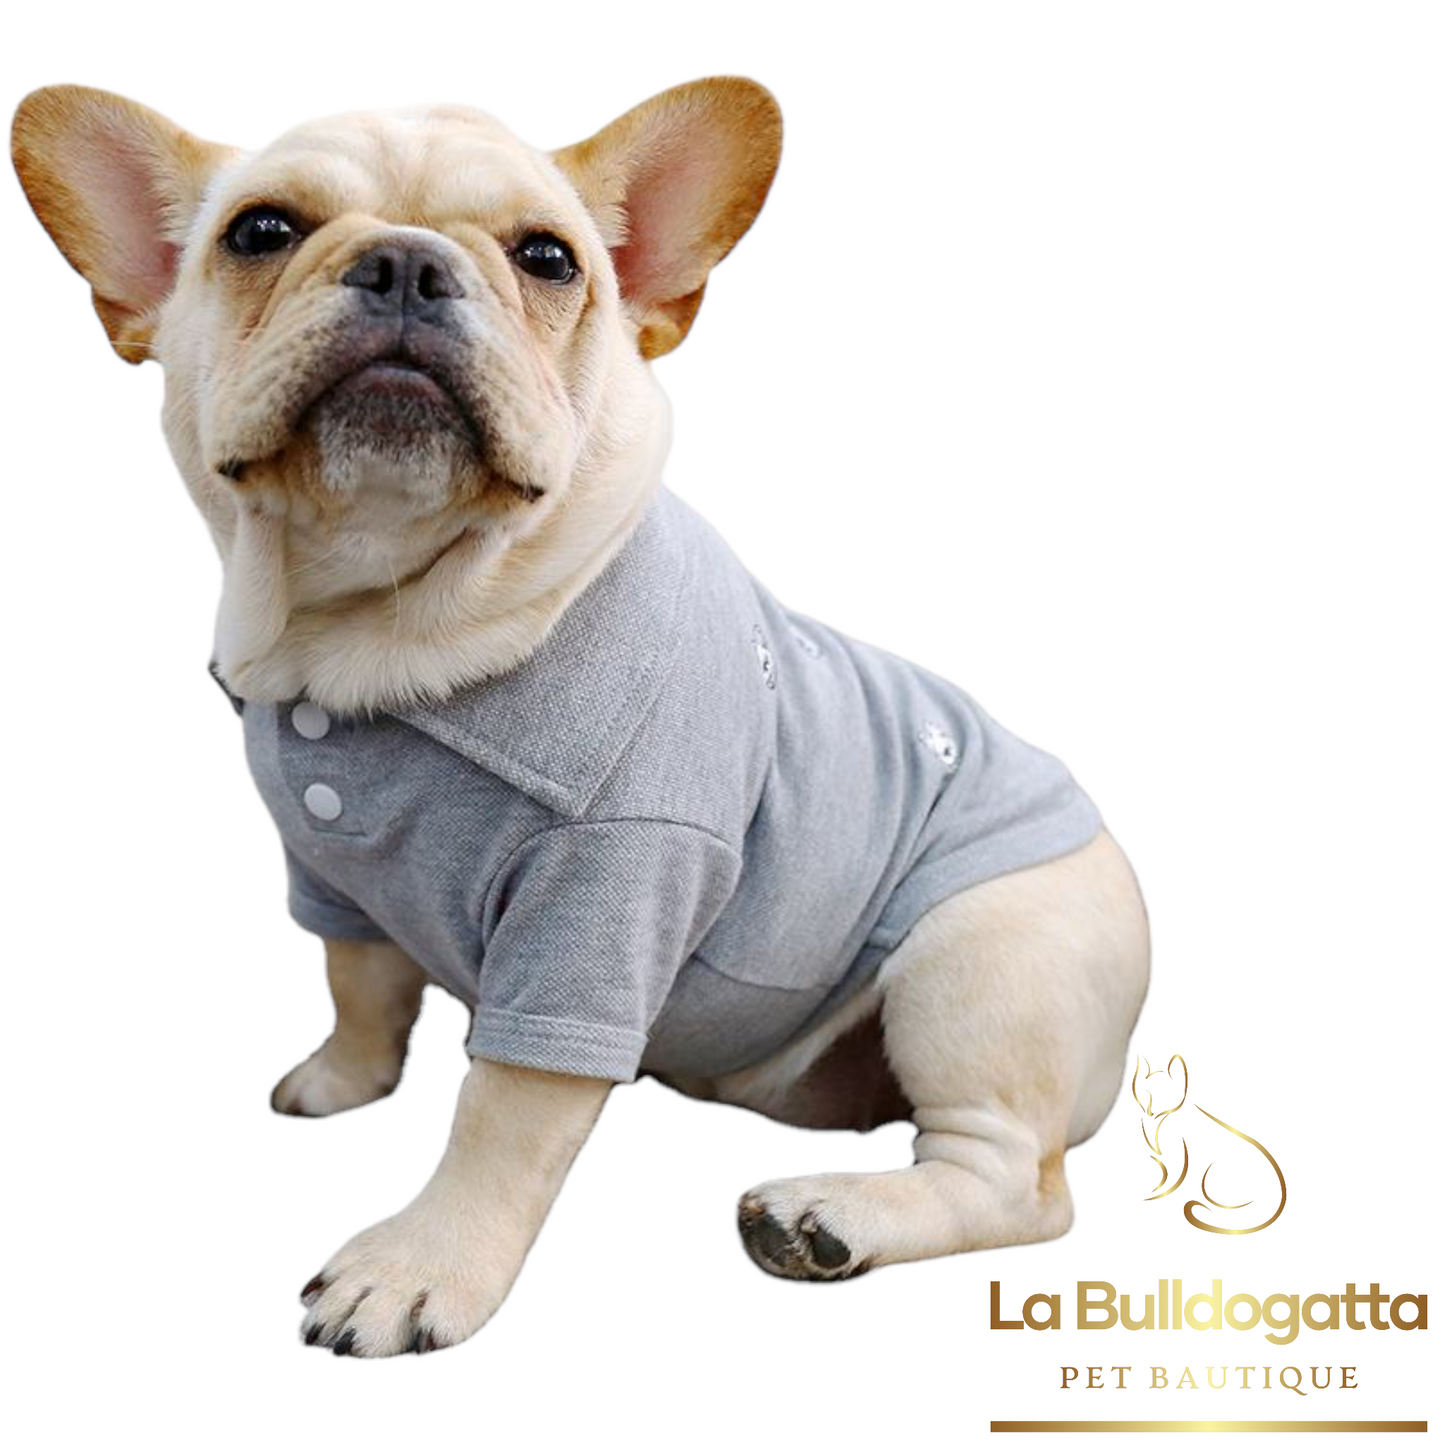 Bulldog smiley polo shirt